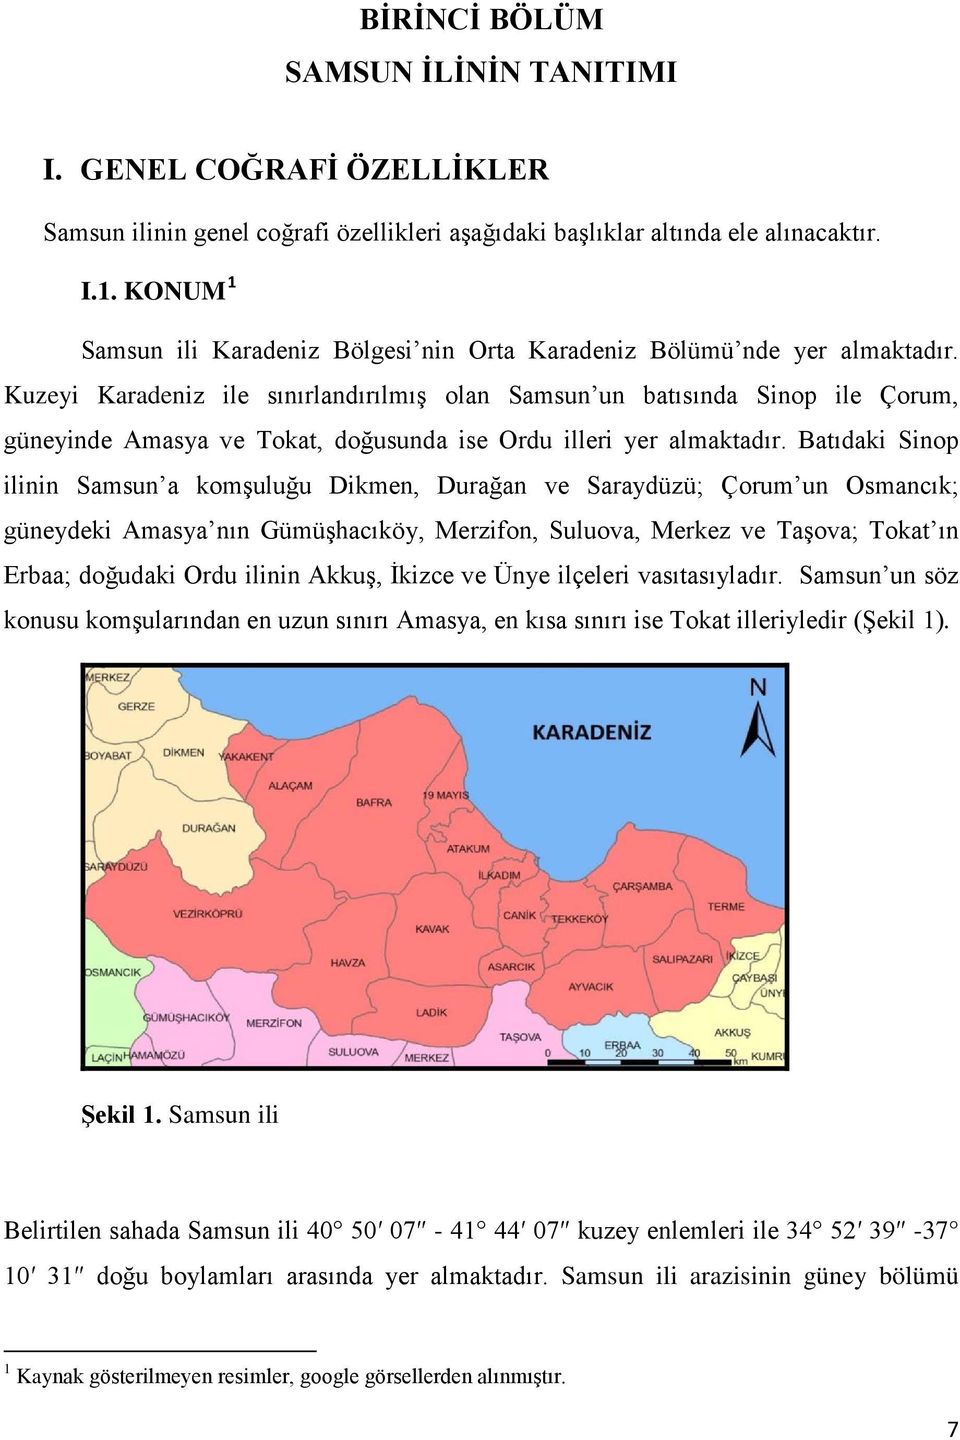 Kuzeyi Karadeniz ile sınırlandırılmış olan Samsun un batısında Sinop ile Çorum, güneyinde Amasya ve Tokat, doğusunda ise Ordu illeri yer almaktadır.